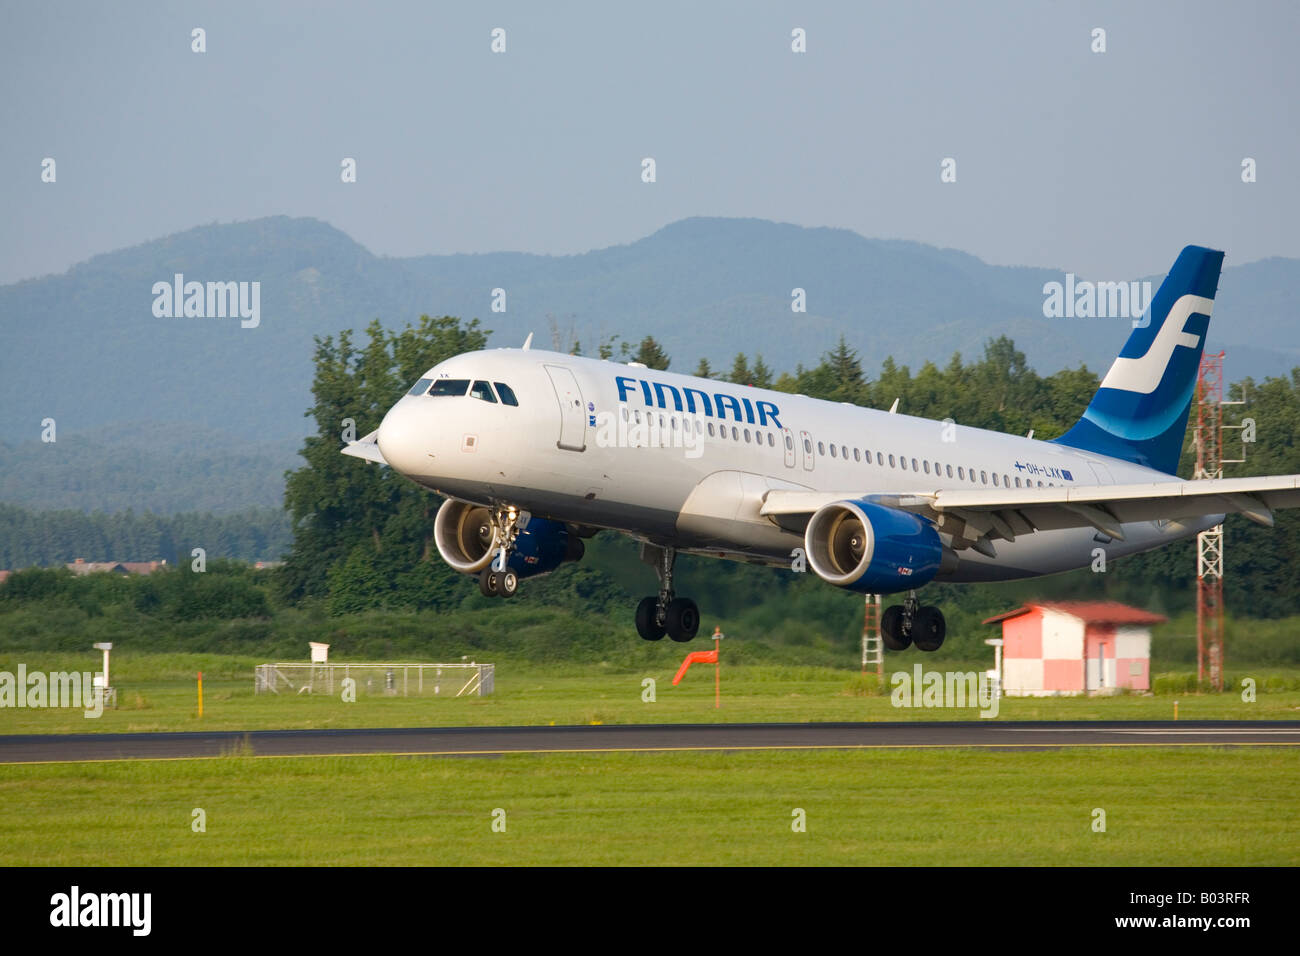 Avion Finnair à l'atterrissage à l'Aéroport Brnik de Ljubljana Joze Pucnik Slovénie Banque D'Images